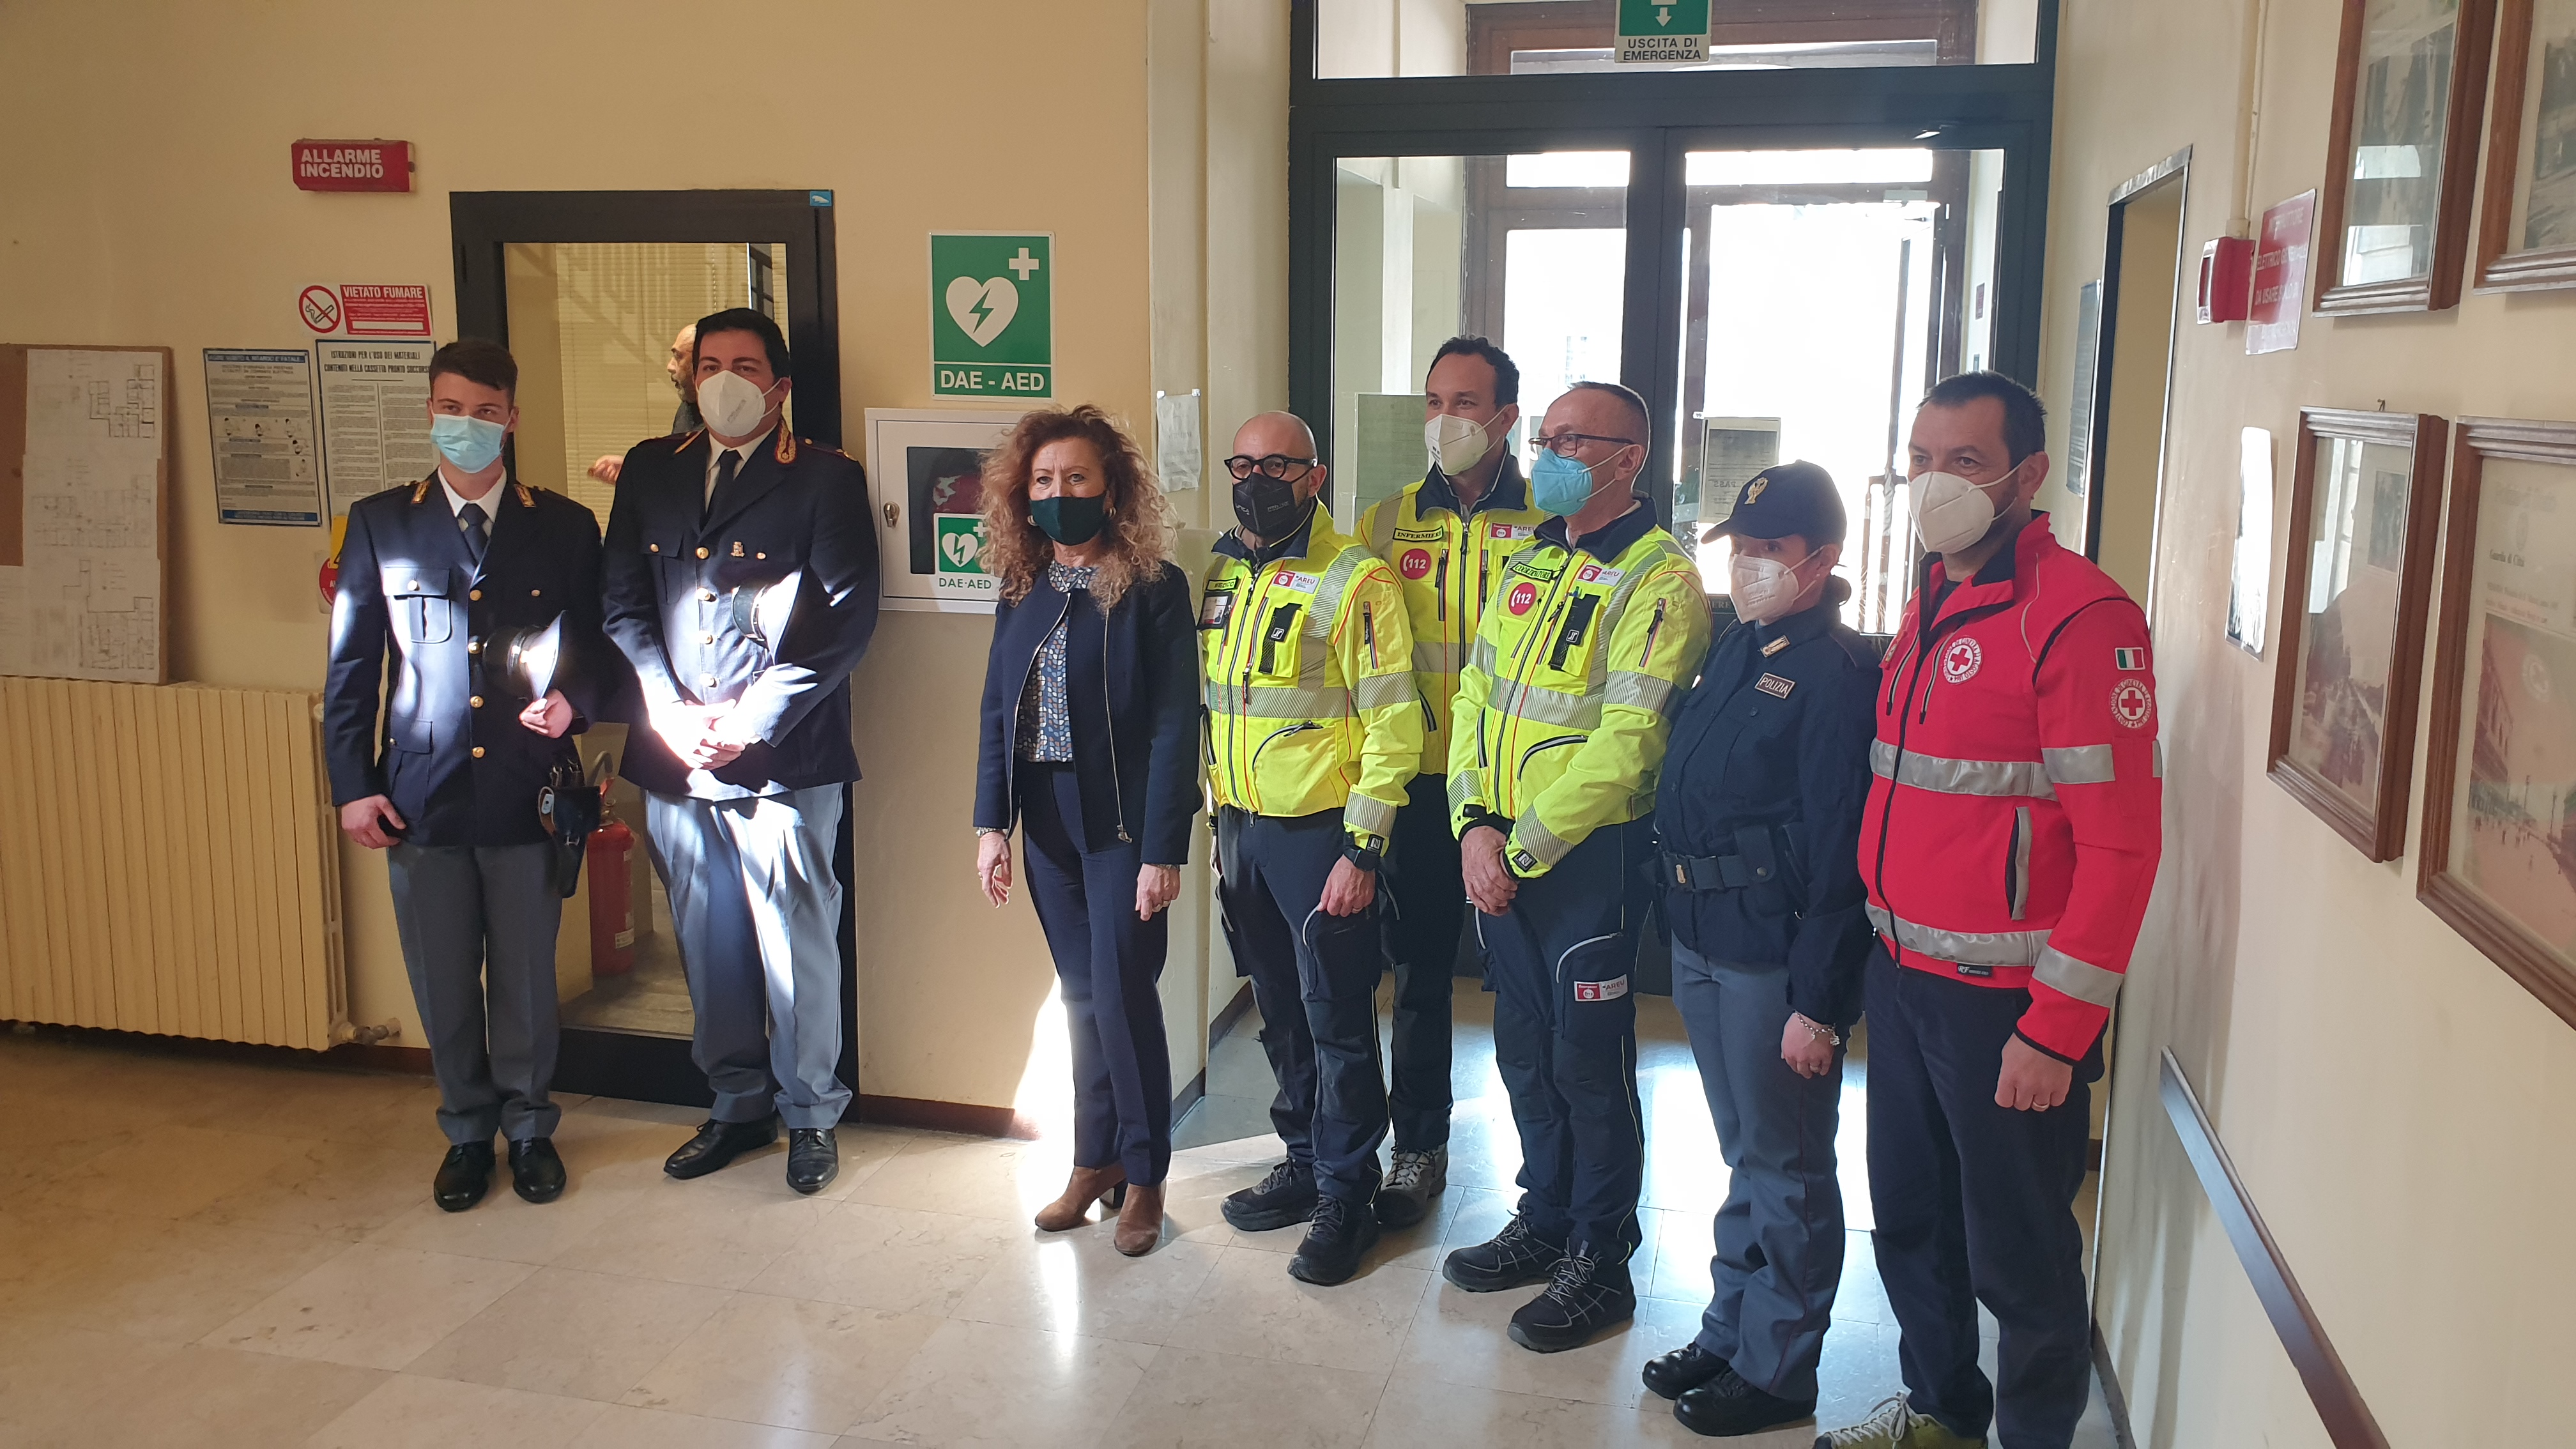 Accordo di collaborazione tra la Questura di Mantova e la Croce Rossa Italiana - Attivato defibrillatore in Questura